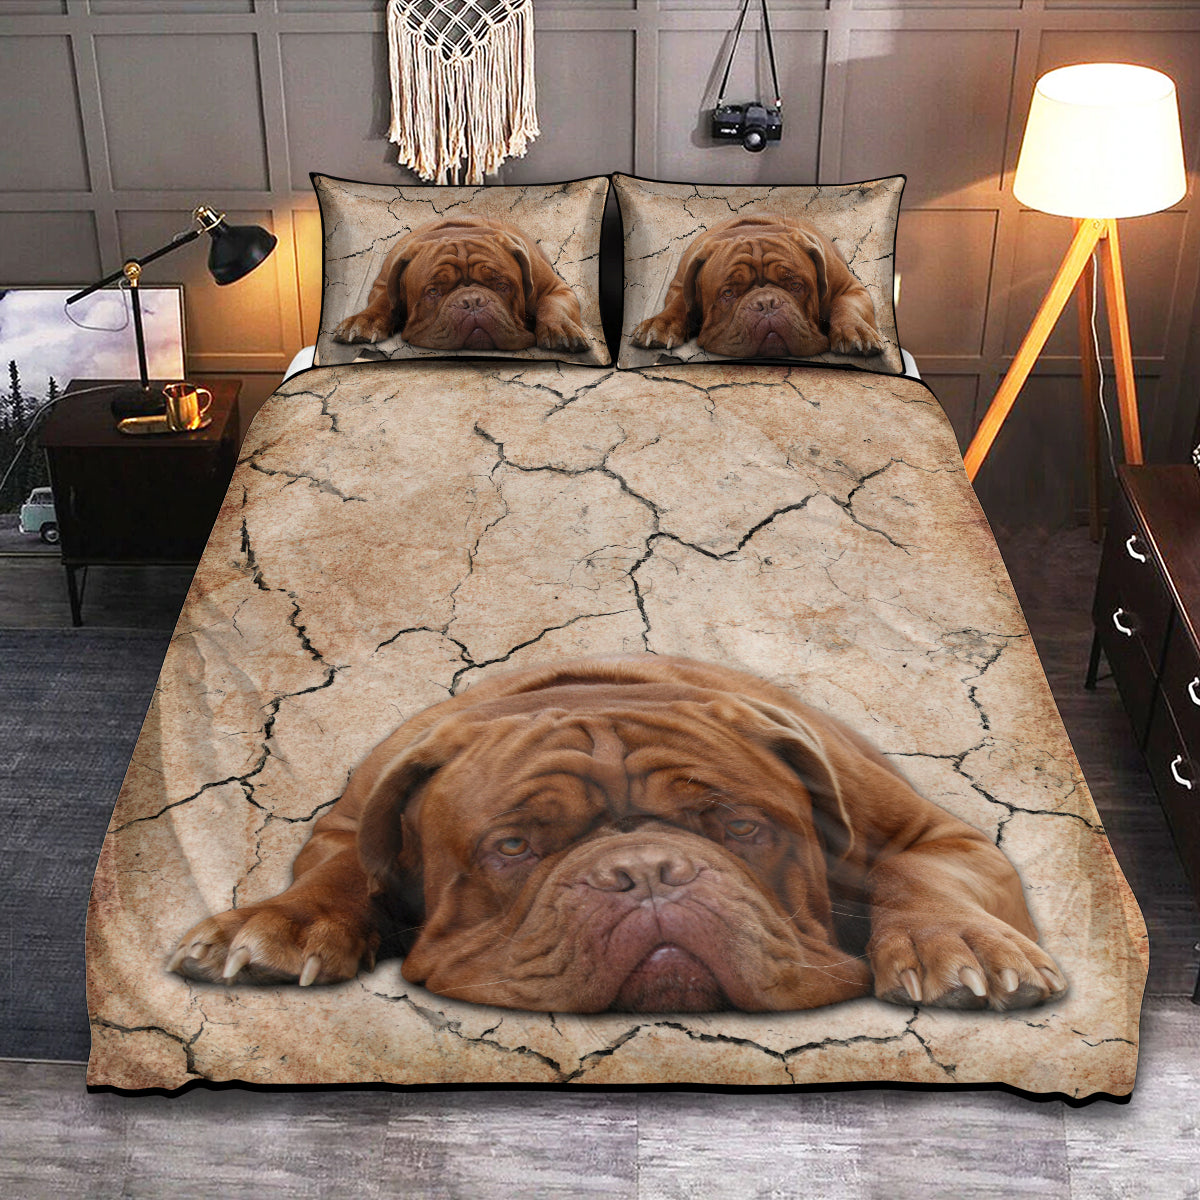 Dogue de Bordeaux Dog Goodnight Classic - Bedding Cover - Owls Matrix LTD